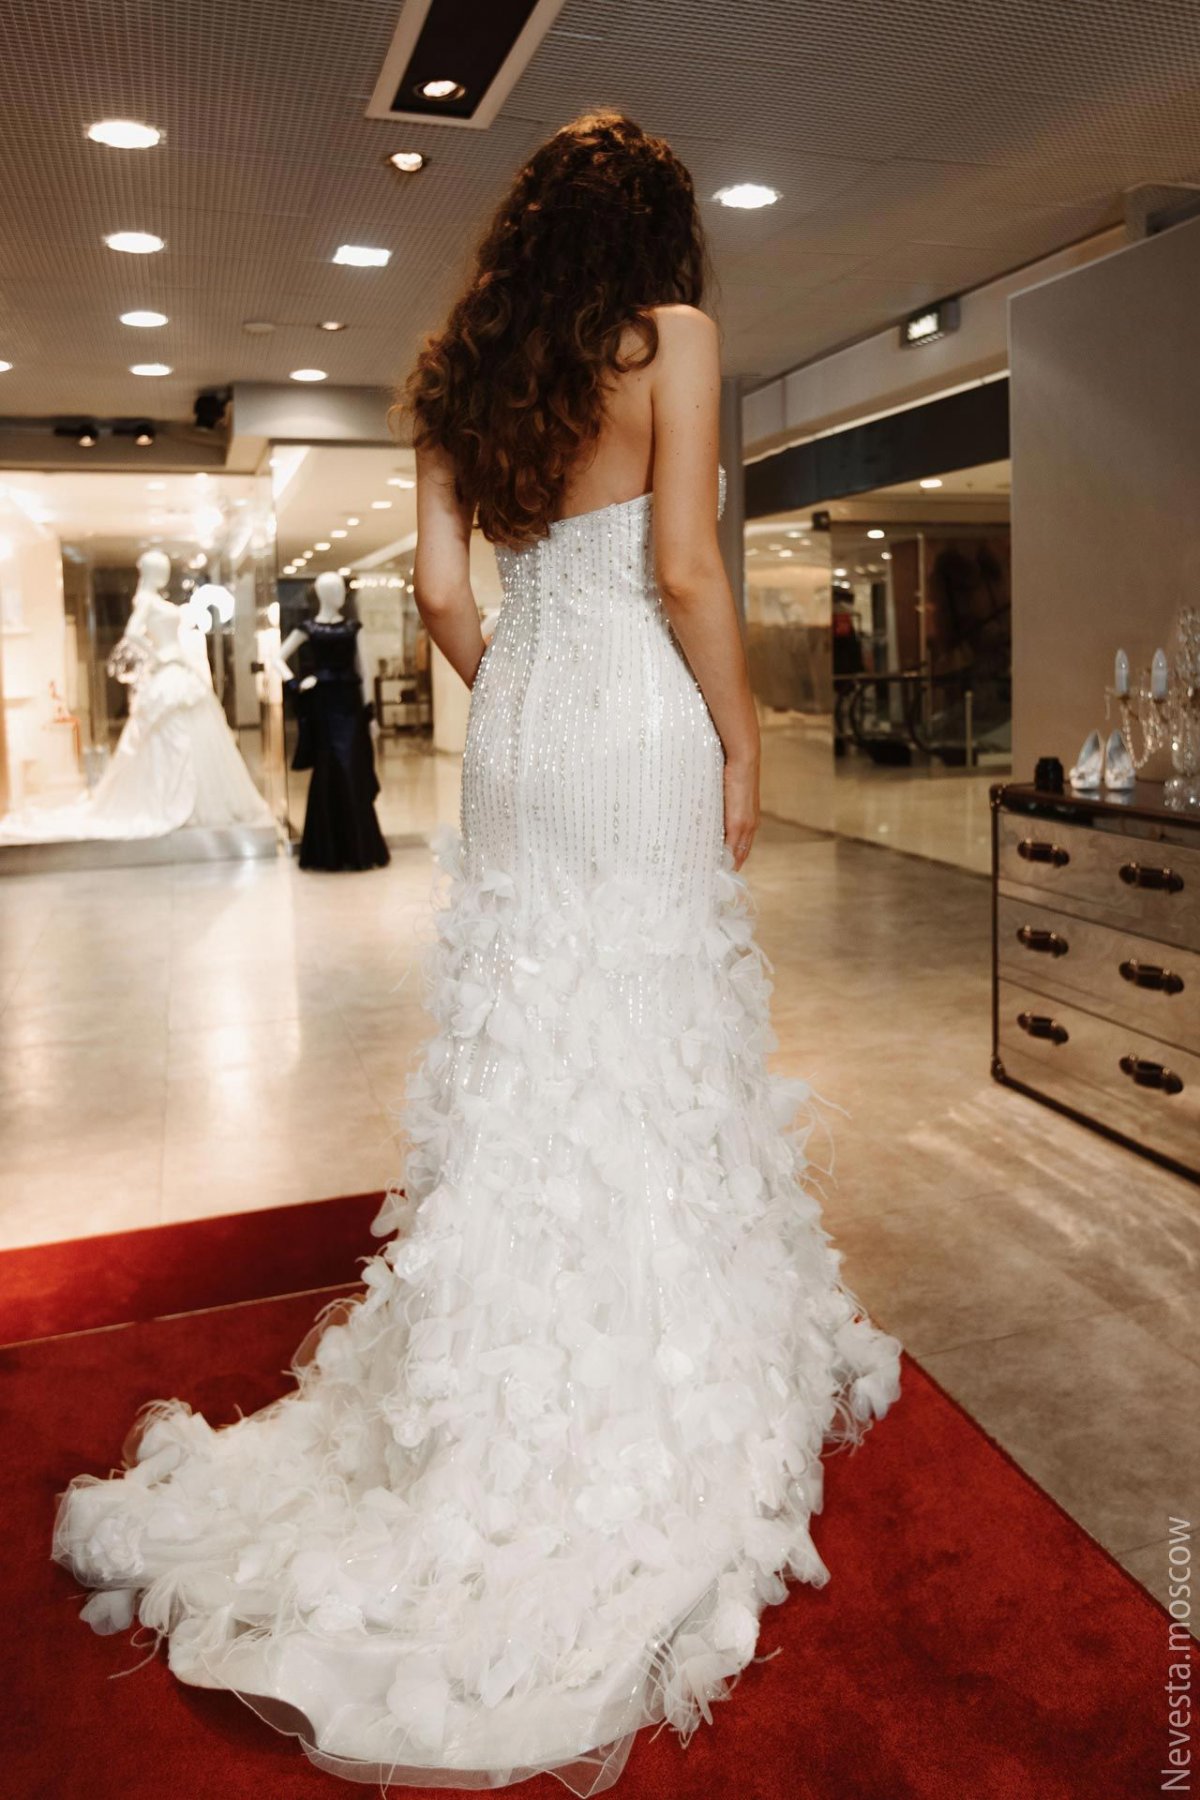 Рената Байкова примеряет свадебное платье фото 4